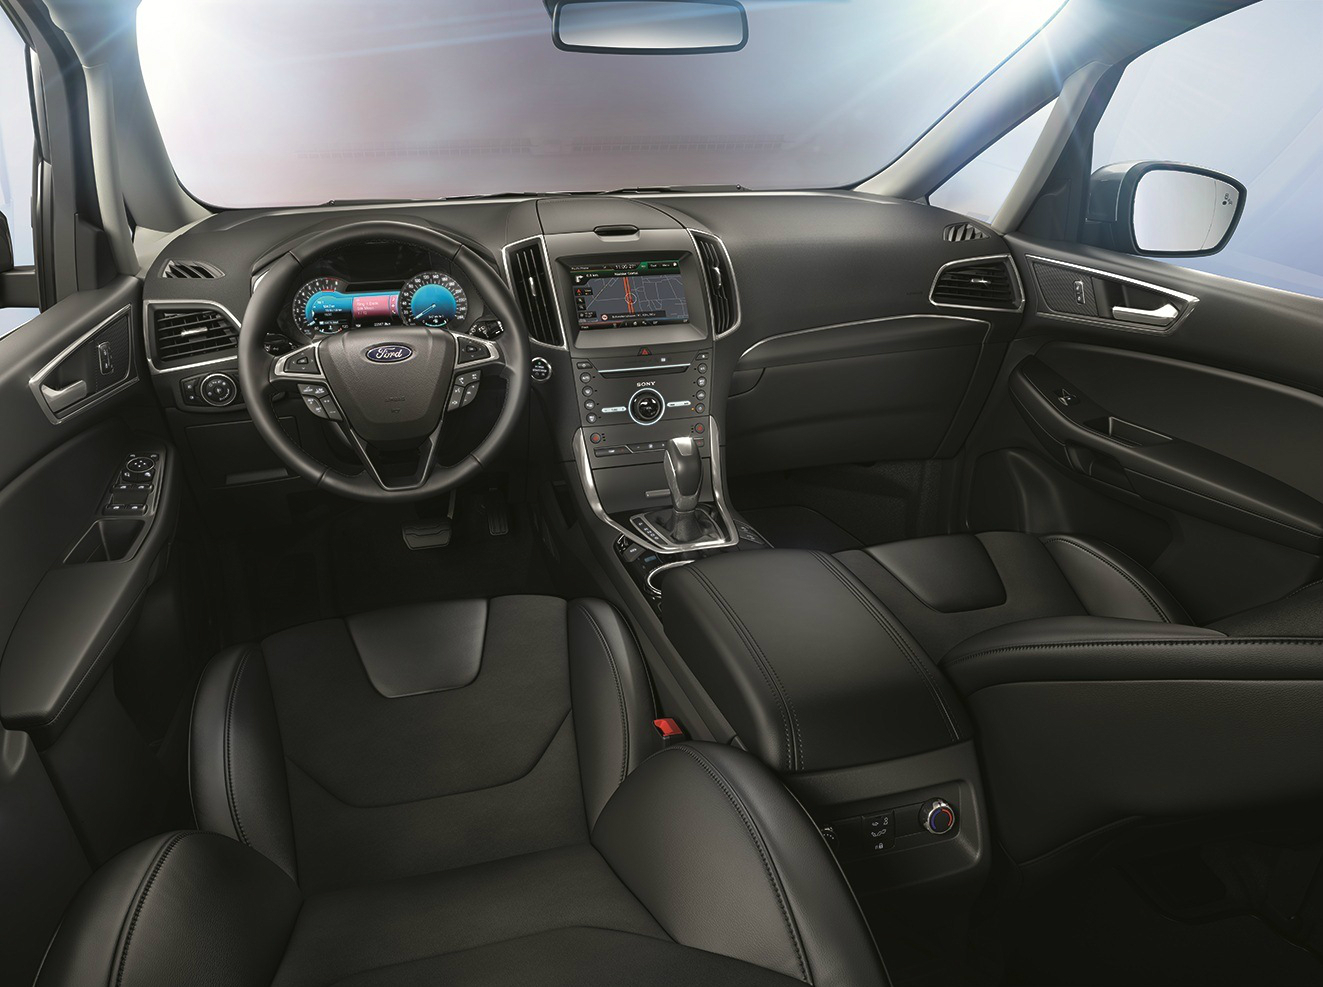 Ford S-Max 2015 interior